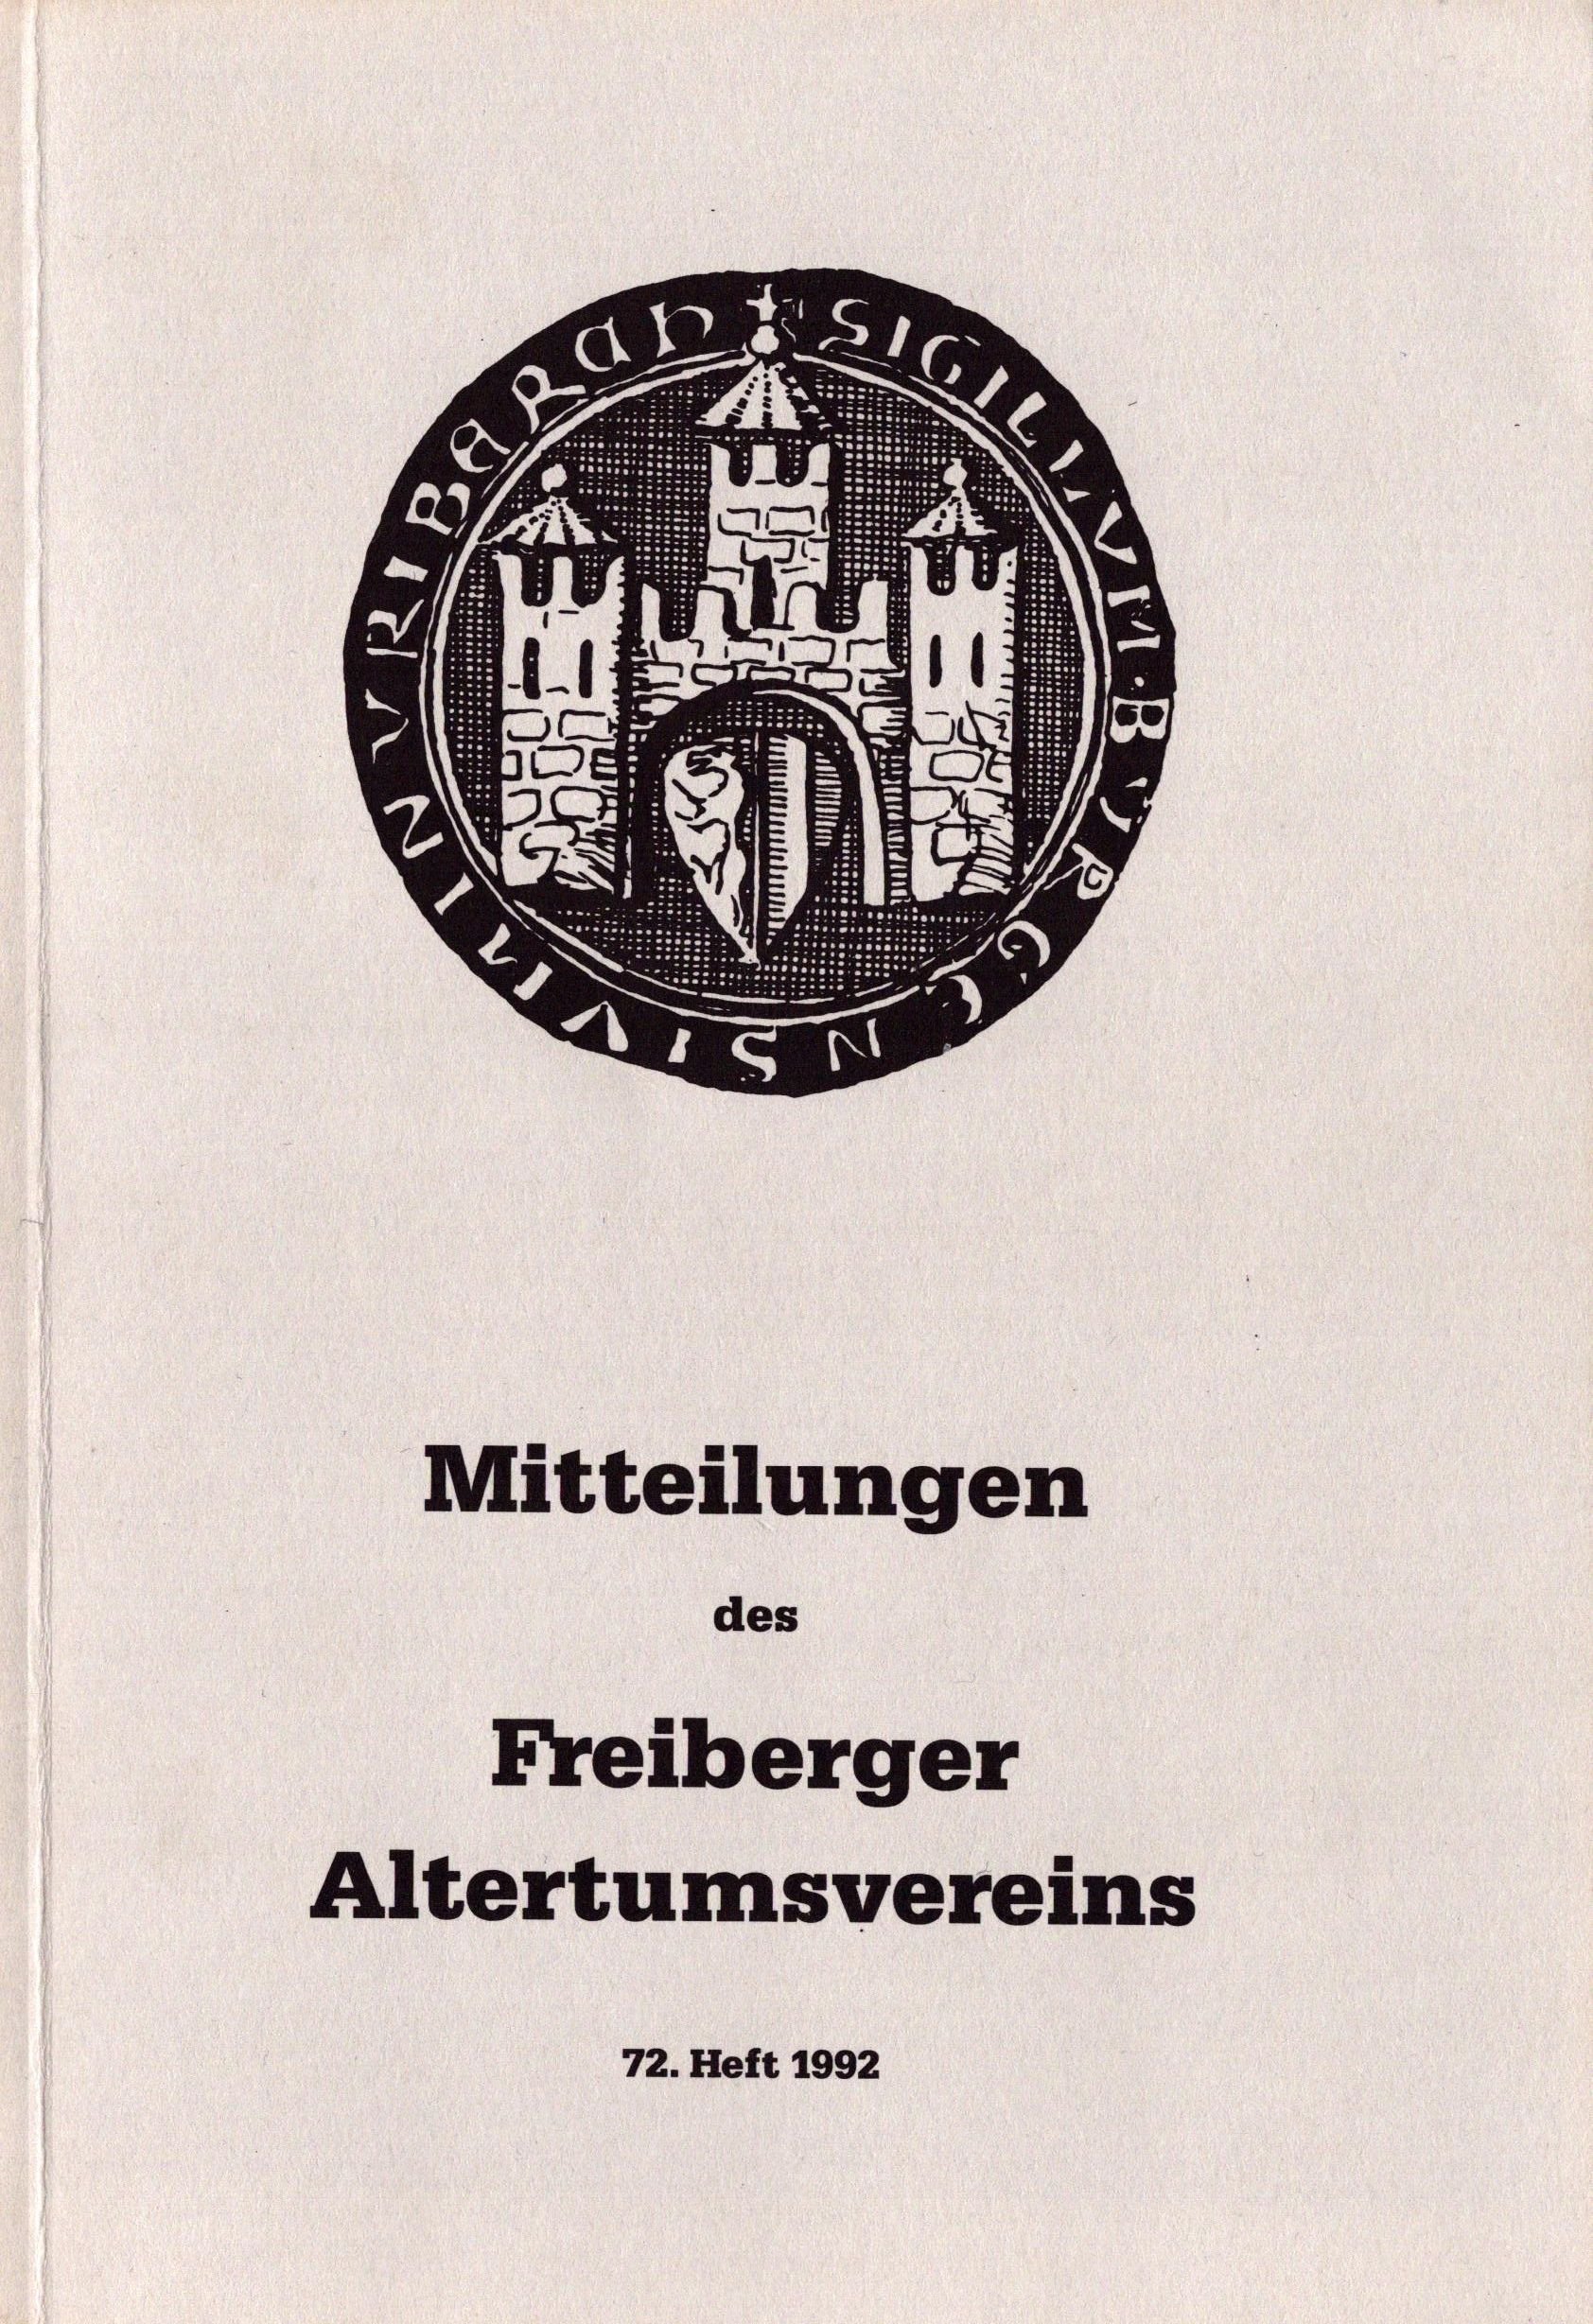 Mitteilungen des Freiberger Altertumsvereins - 72. Heft 1992 (Archiv SAXONIA-FREIBERG-STIFTUNG CC BY-NC-SA)